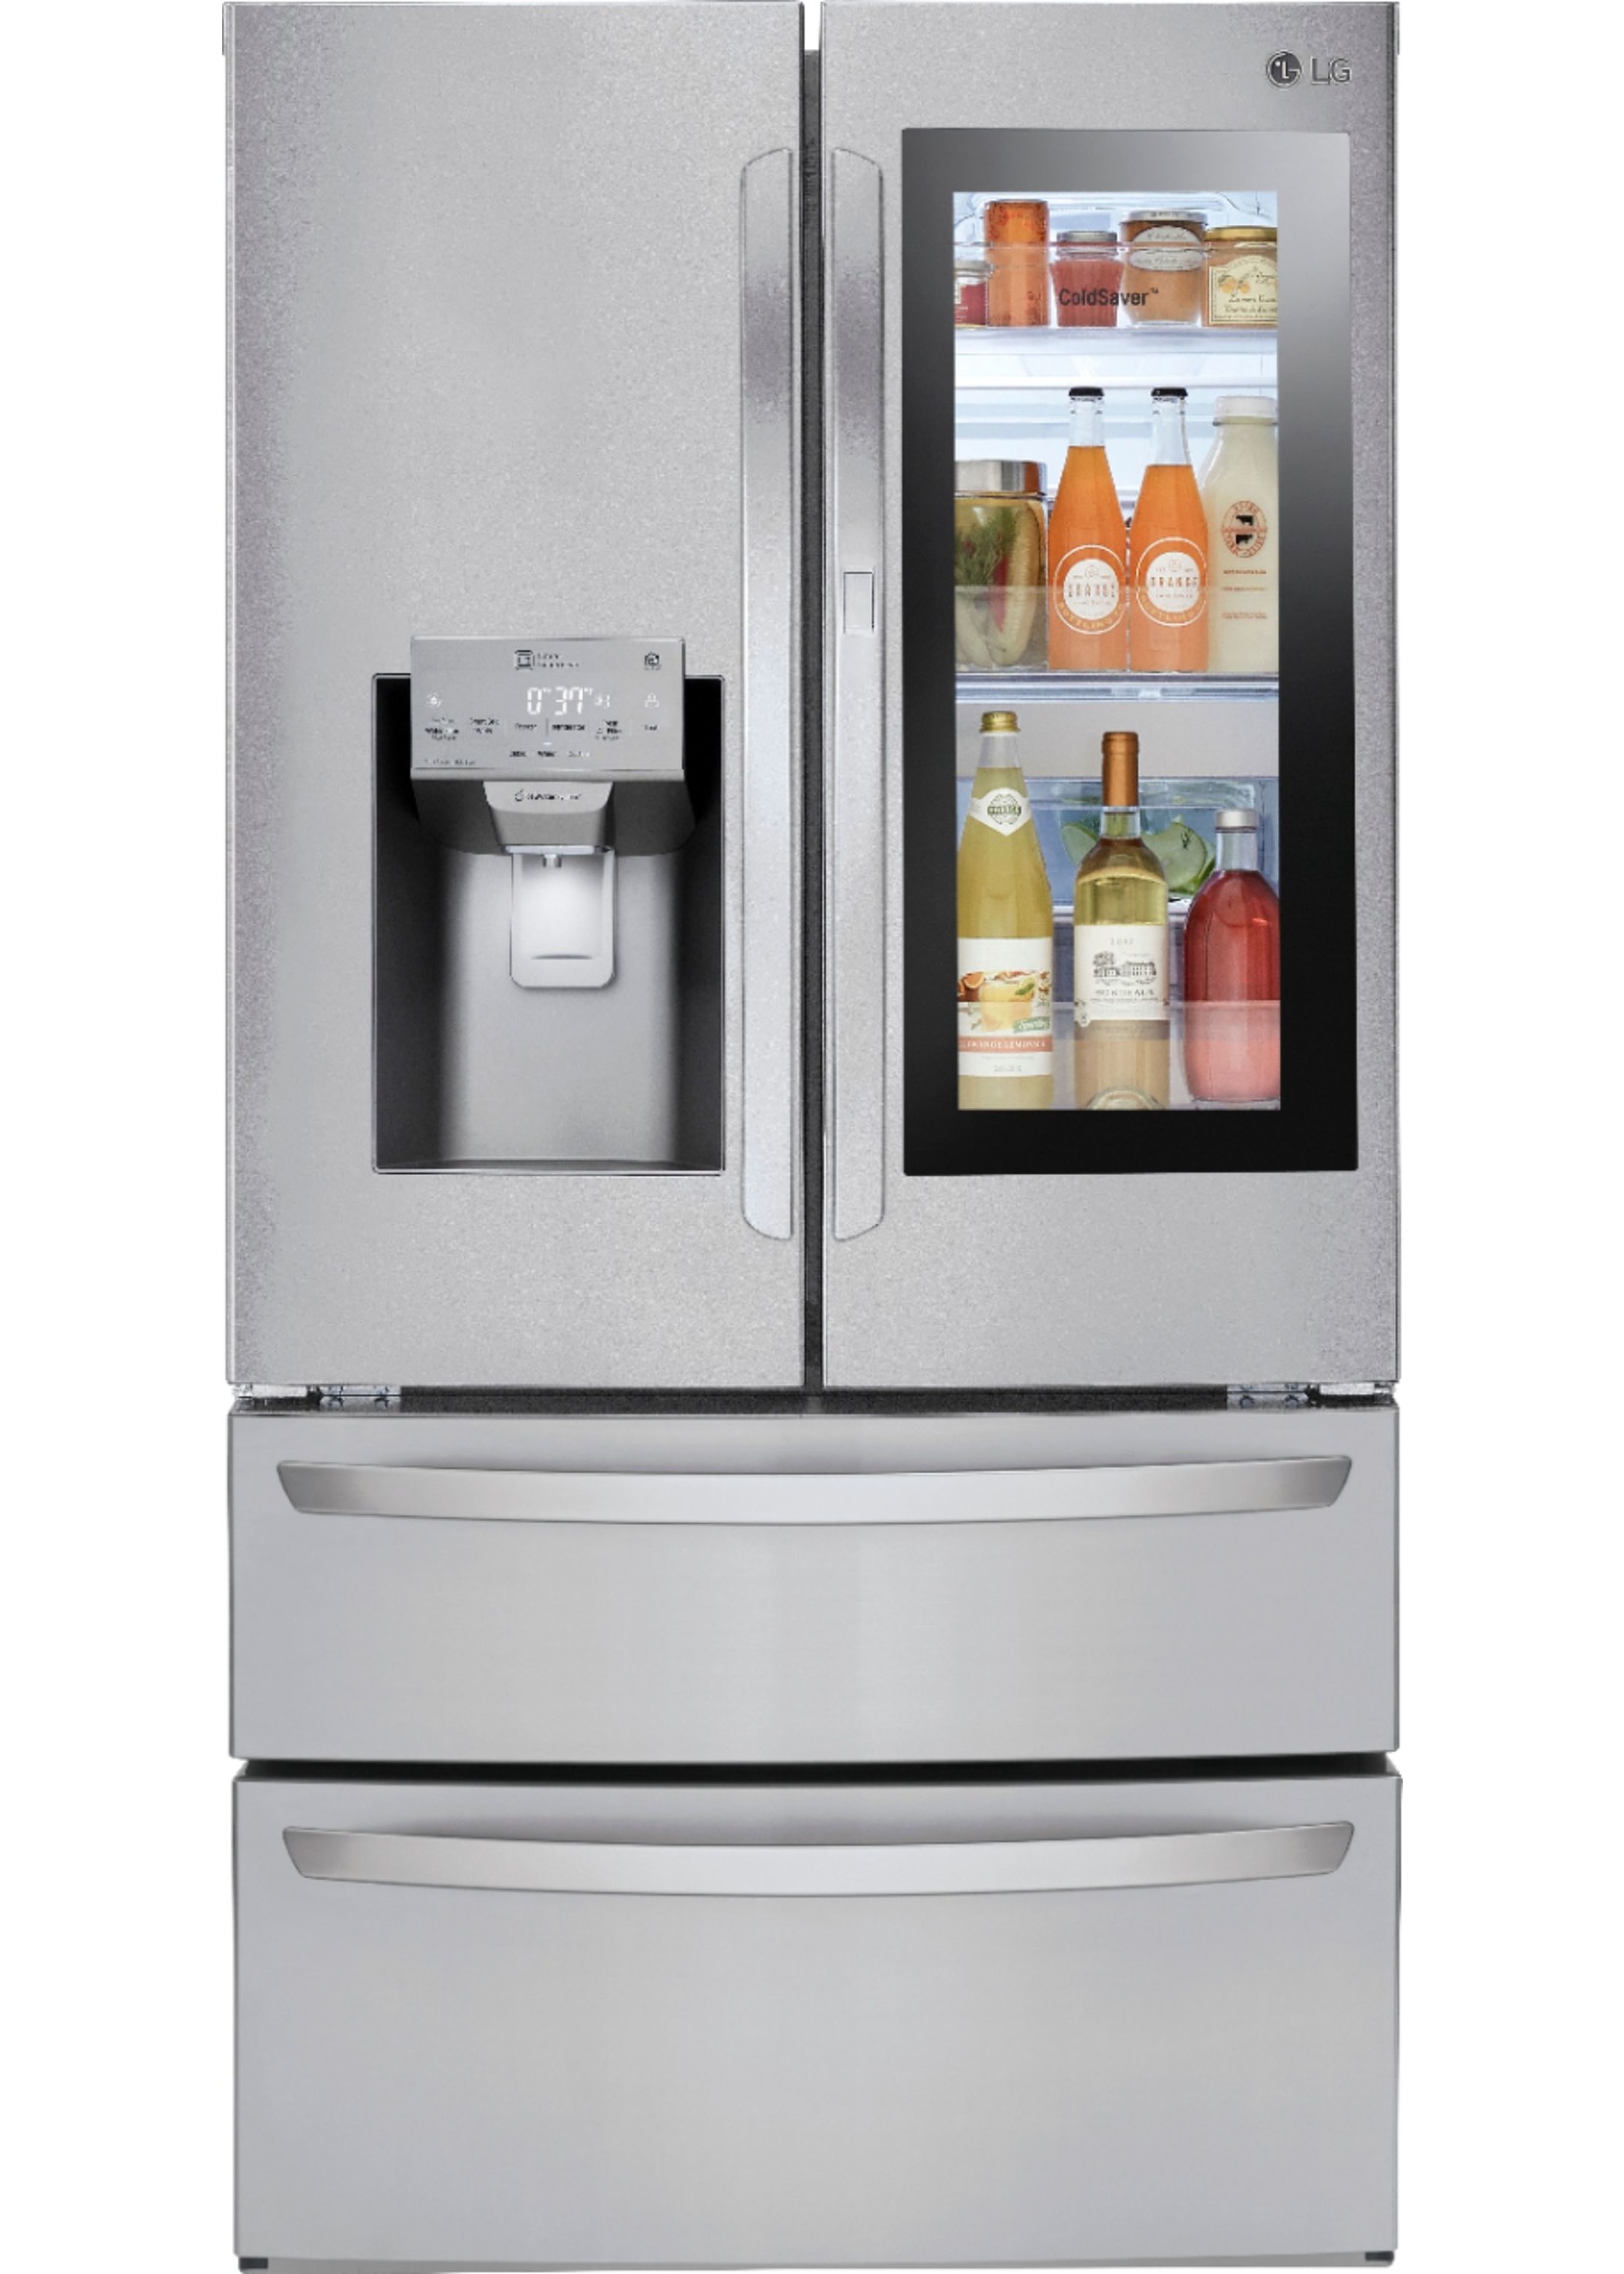 LG LG Electronics 28 cu. ft. 4-Door Smart Refrigerator with InstaView Door-in-Door in Stainless Steel